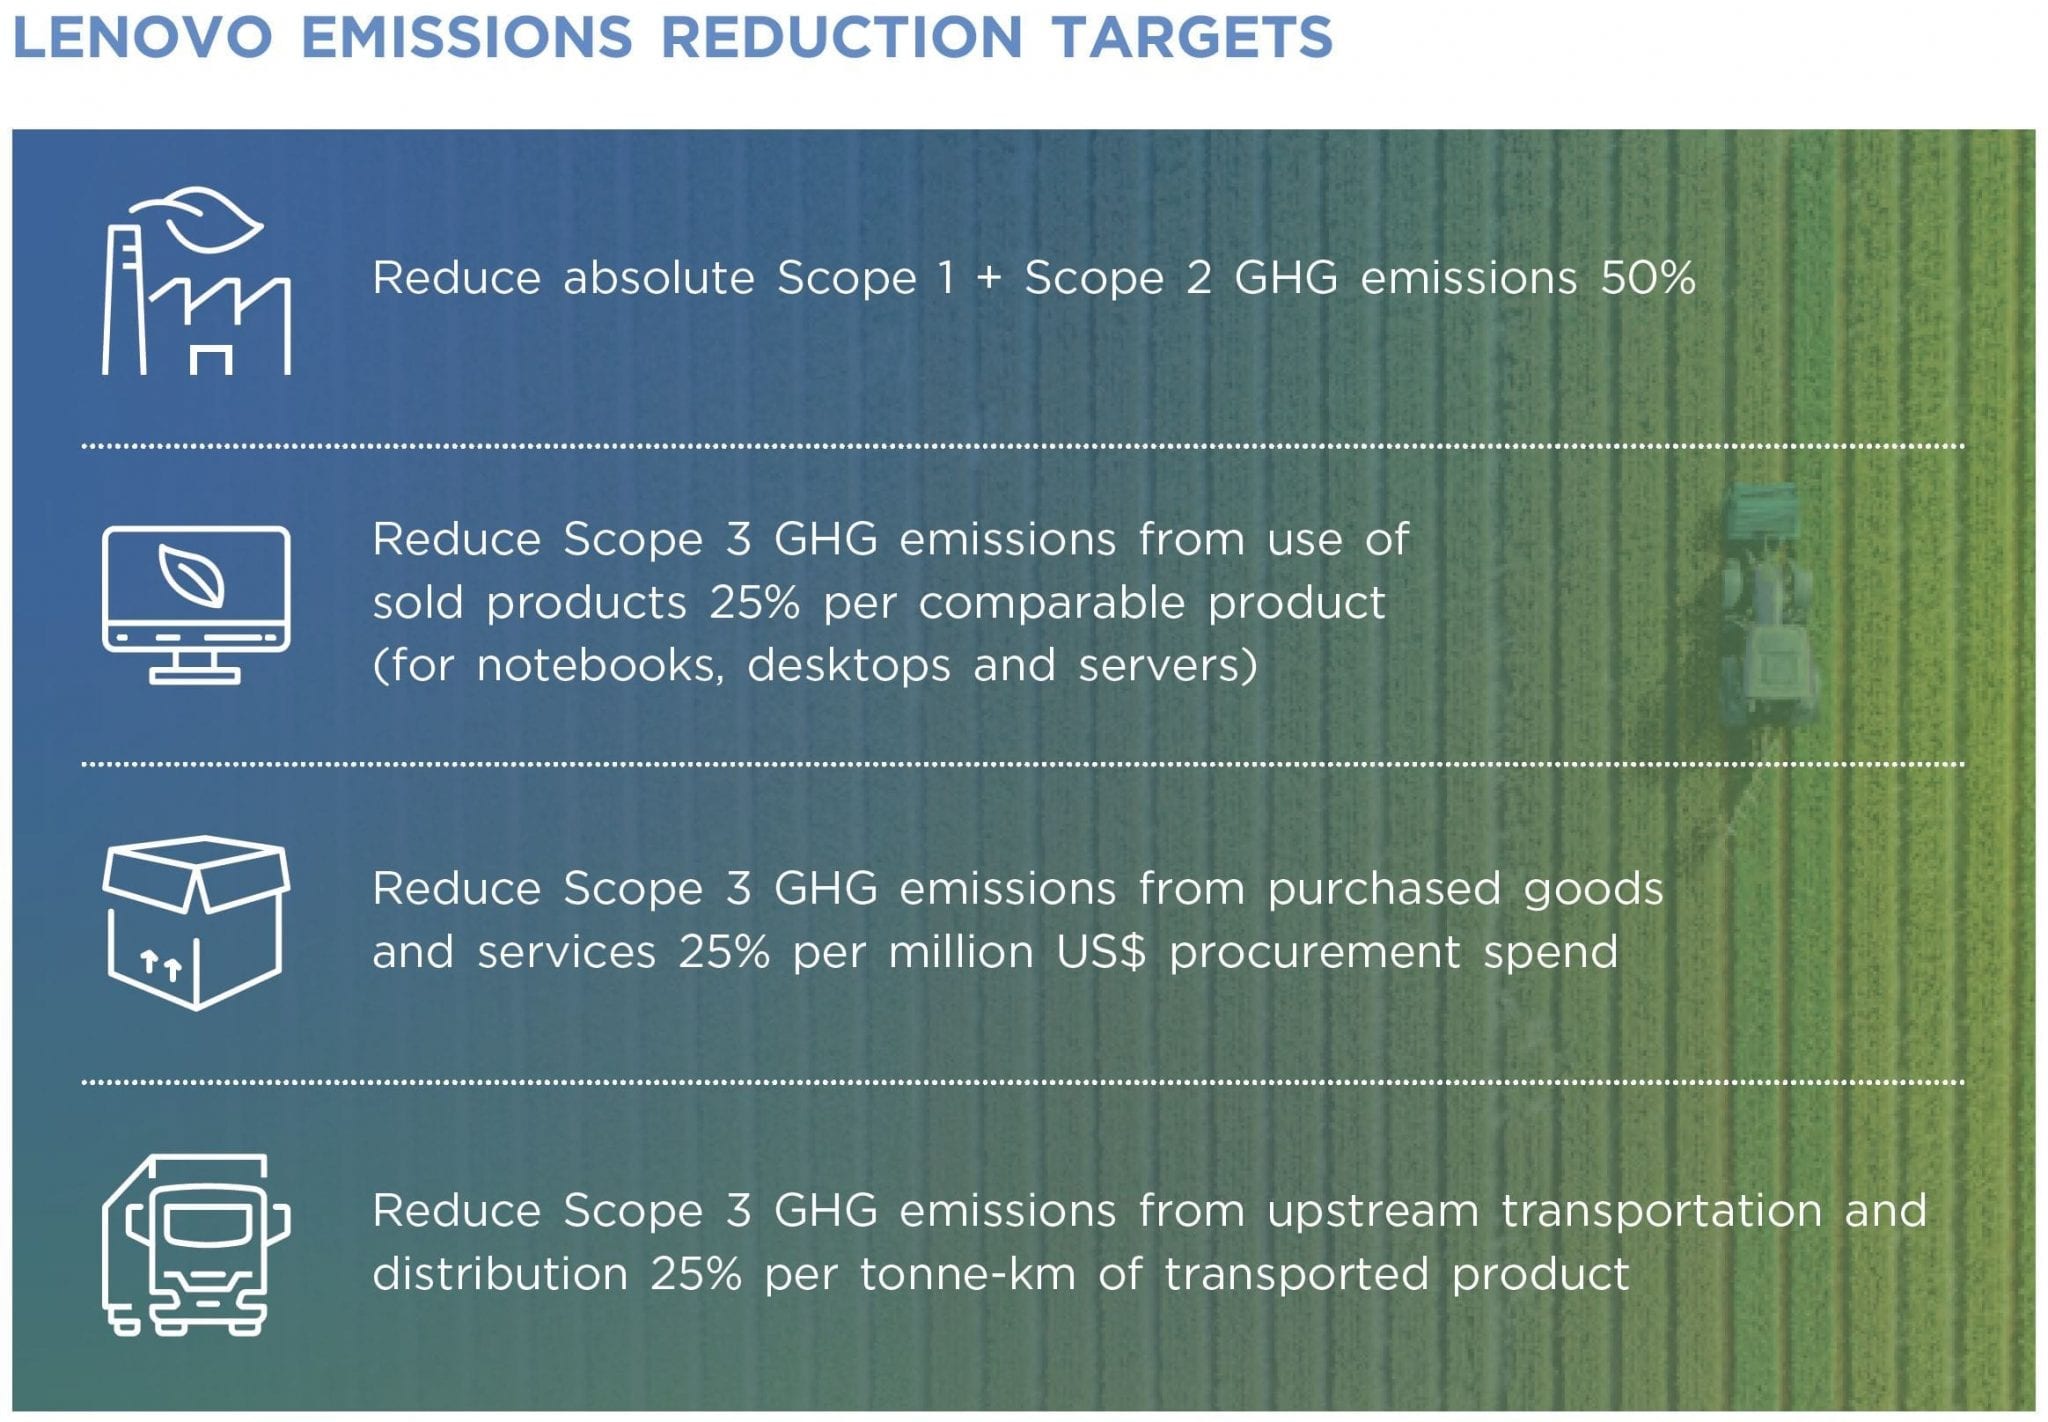 Lenovo's 2030 emission reduction targets